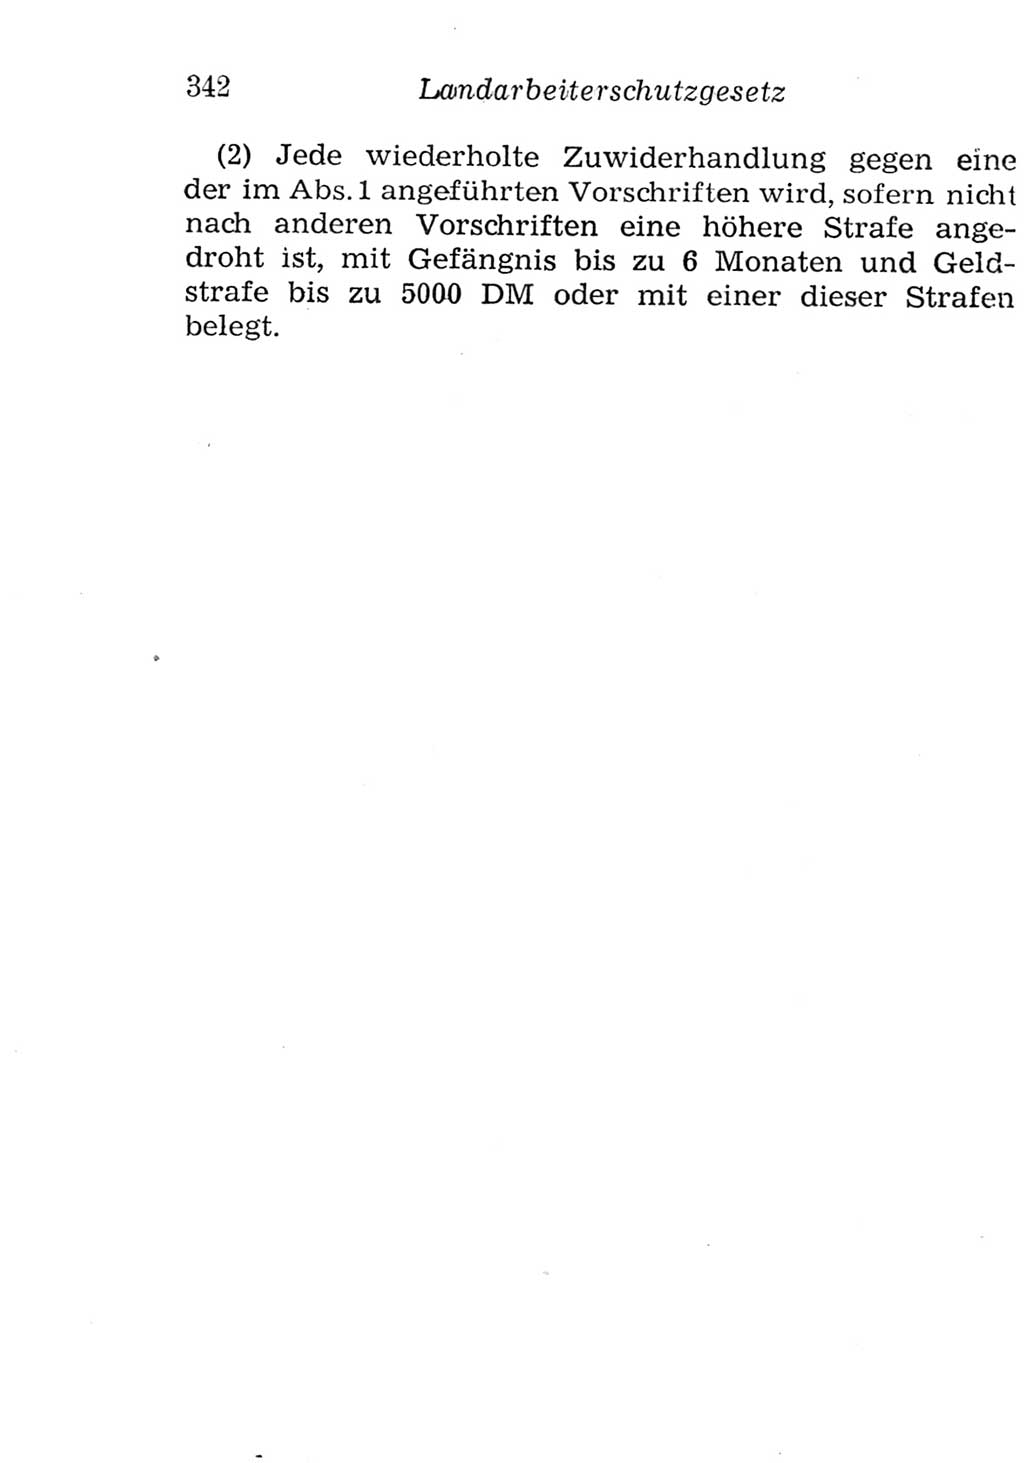 Strafgesetzbuch (StGB) und andere Strafgesetze [Deutsche Demokratische Republik (DDR)] 1957, Seite 342 (StGB Strafges. DDR 1957, S. 342)